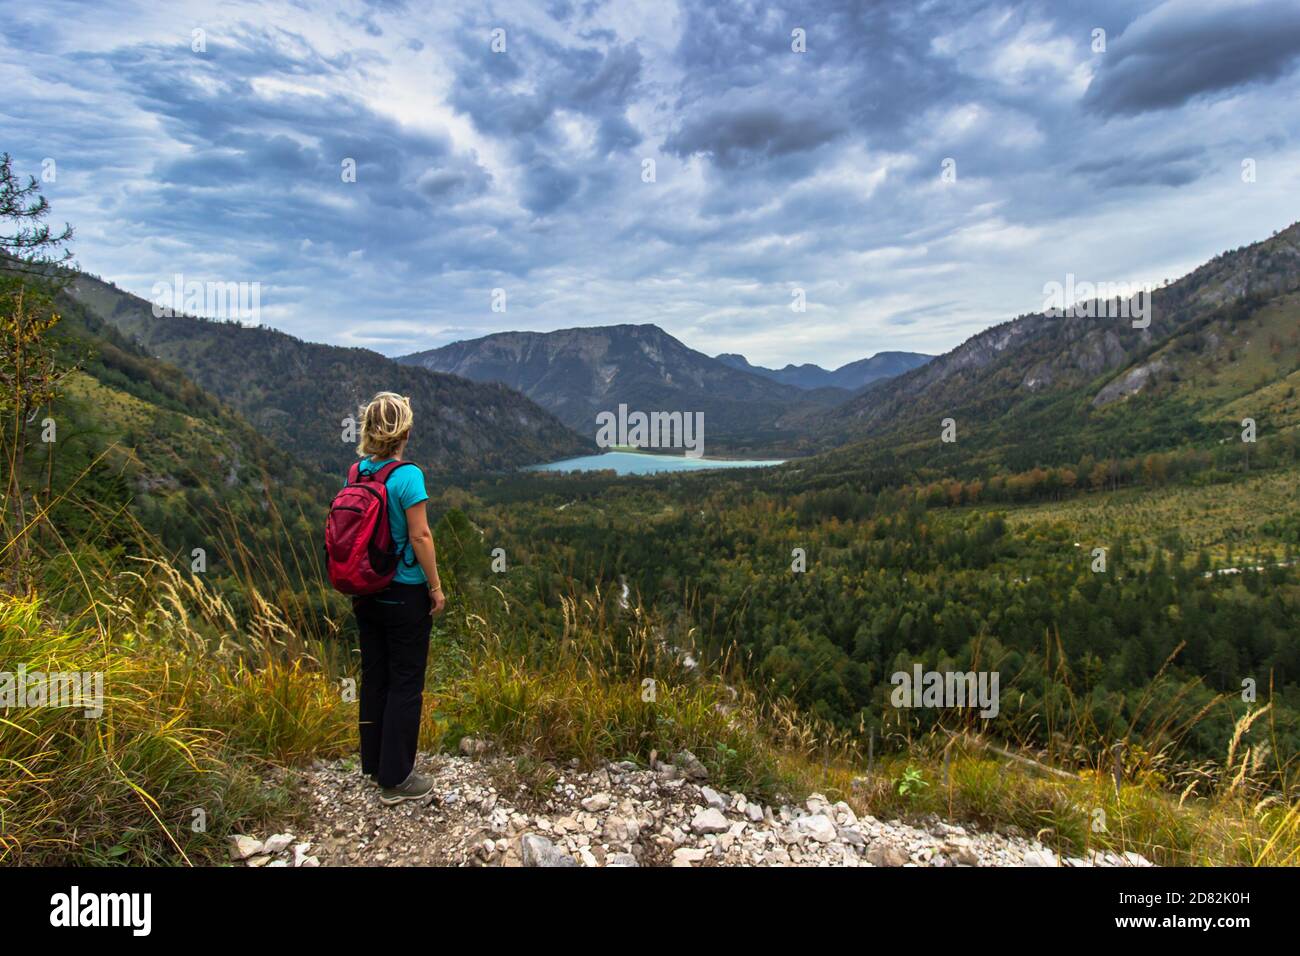 Ragazza sportiva attiva che riposa sulla vetta delle Alpi, in Austria. Backpacker godendo della vista delle montagne e del lago. Wanderlust concetto di libertà di viaggio Foto Stock